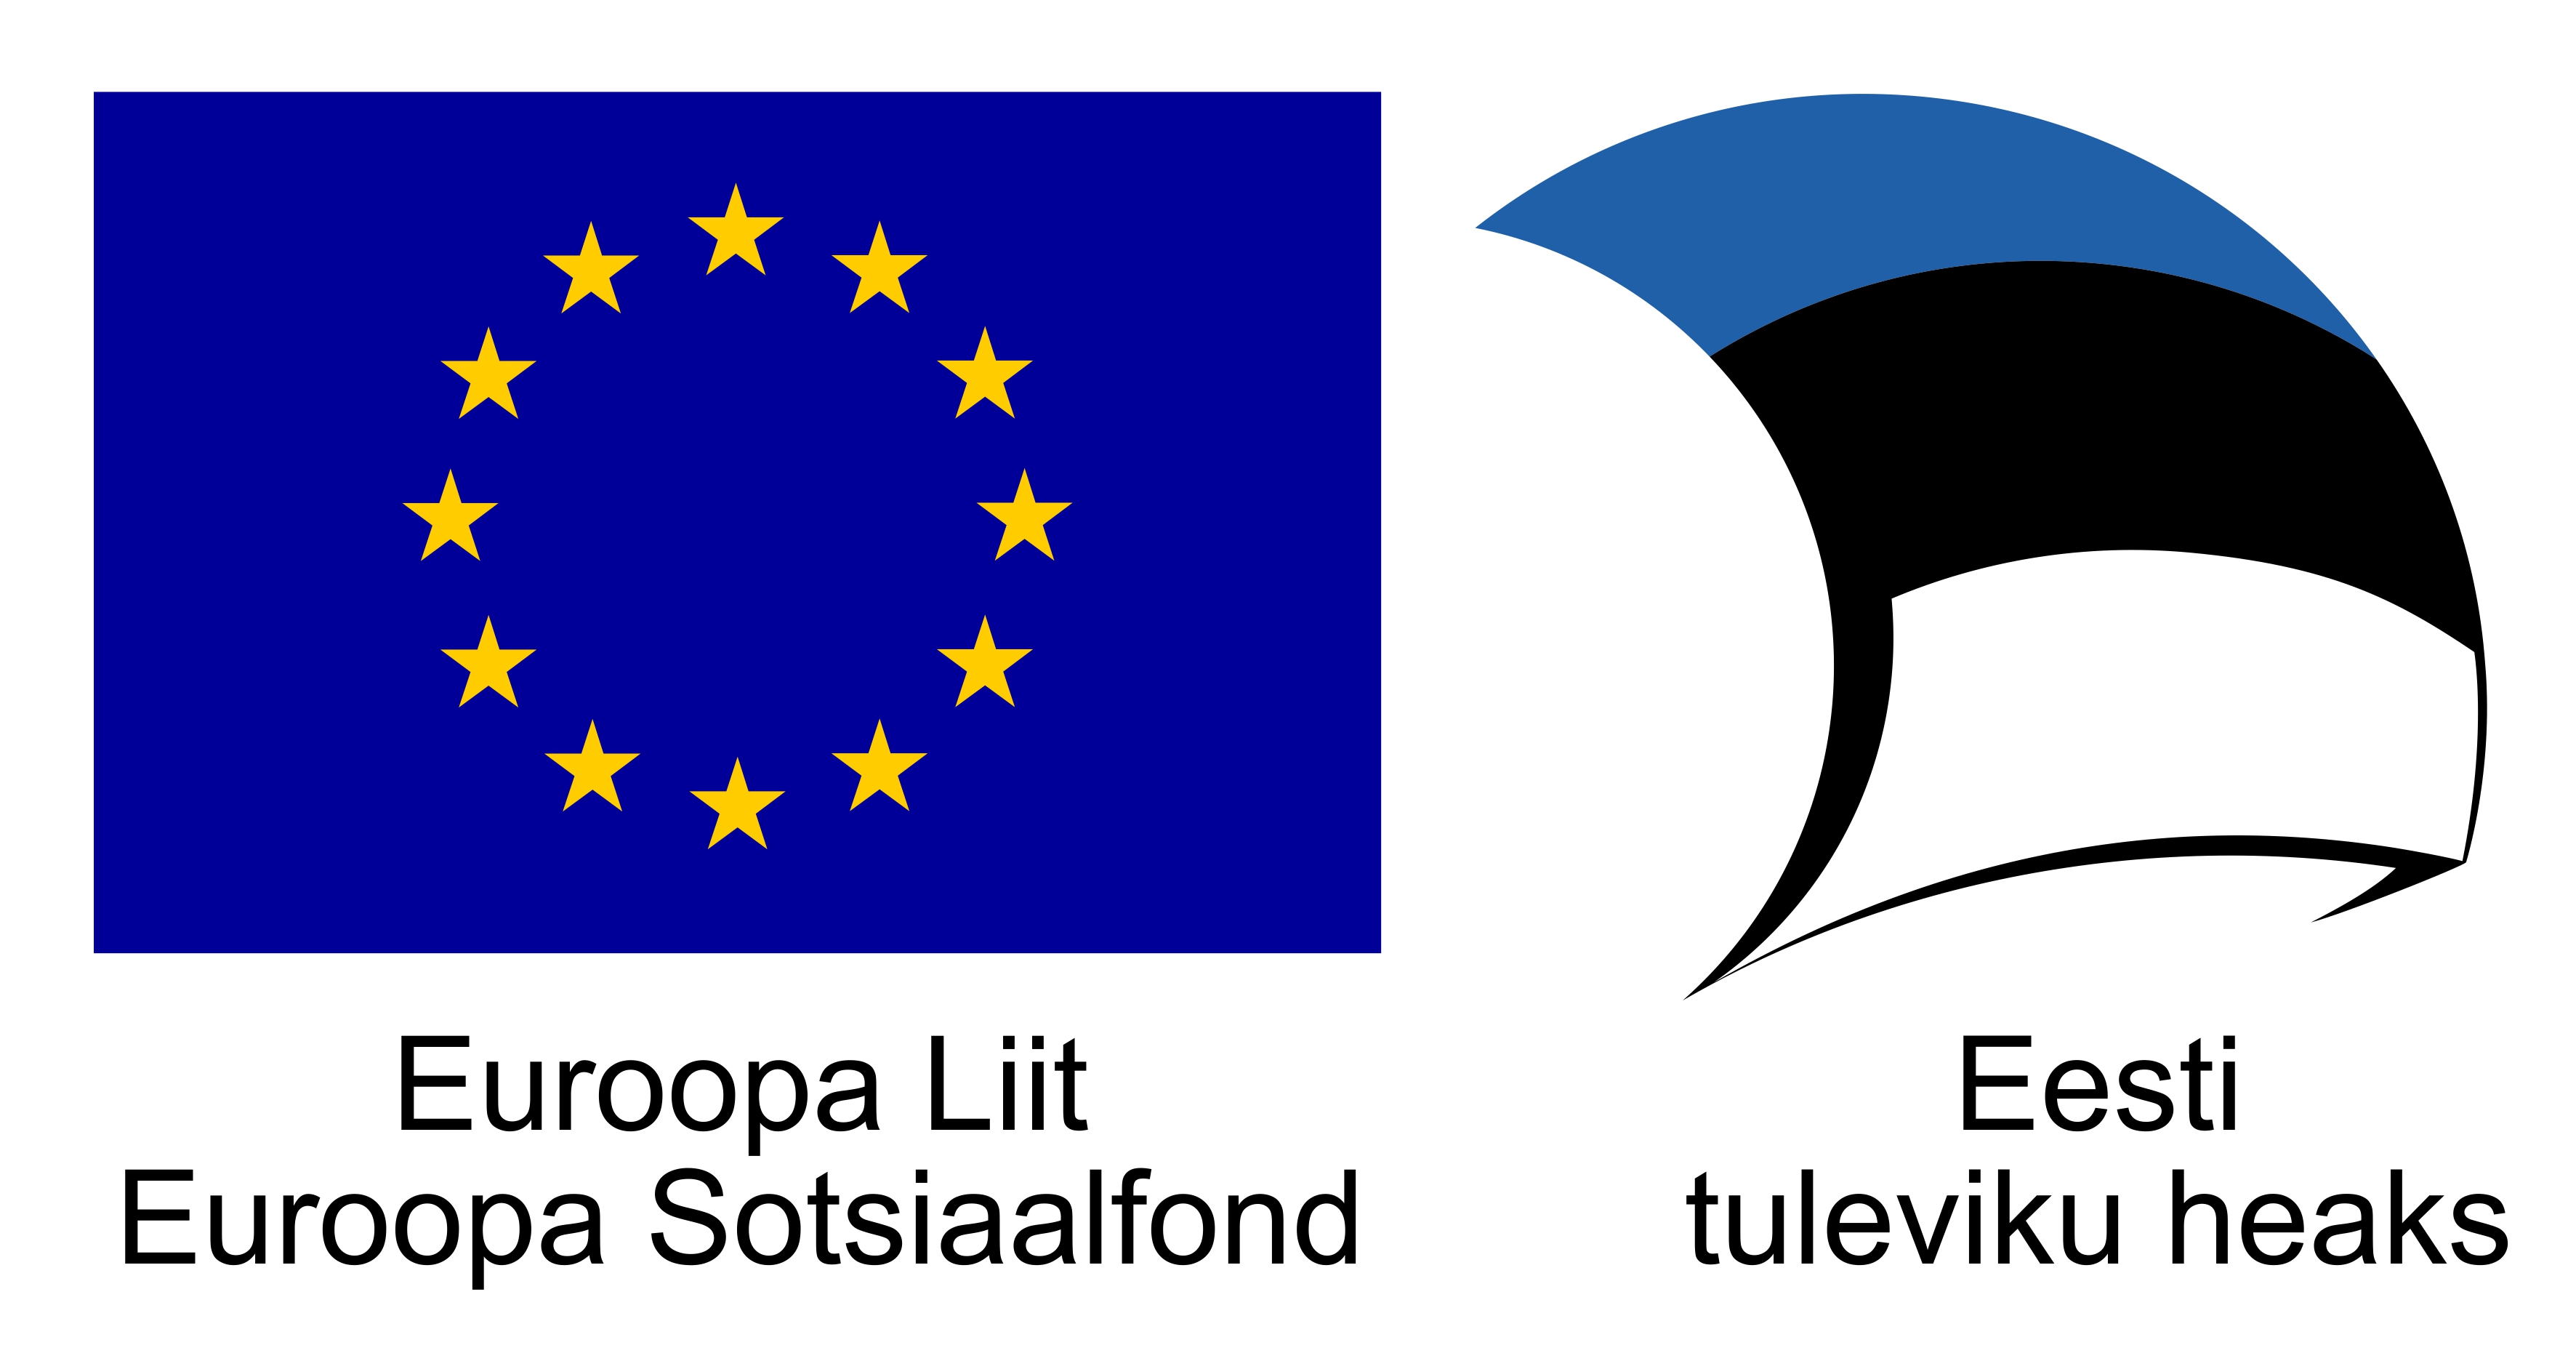 Euroopa Liit. Euroopa Sotsiaalfond. Eesti tuleviku heaks.